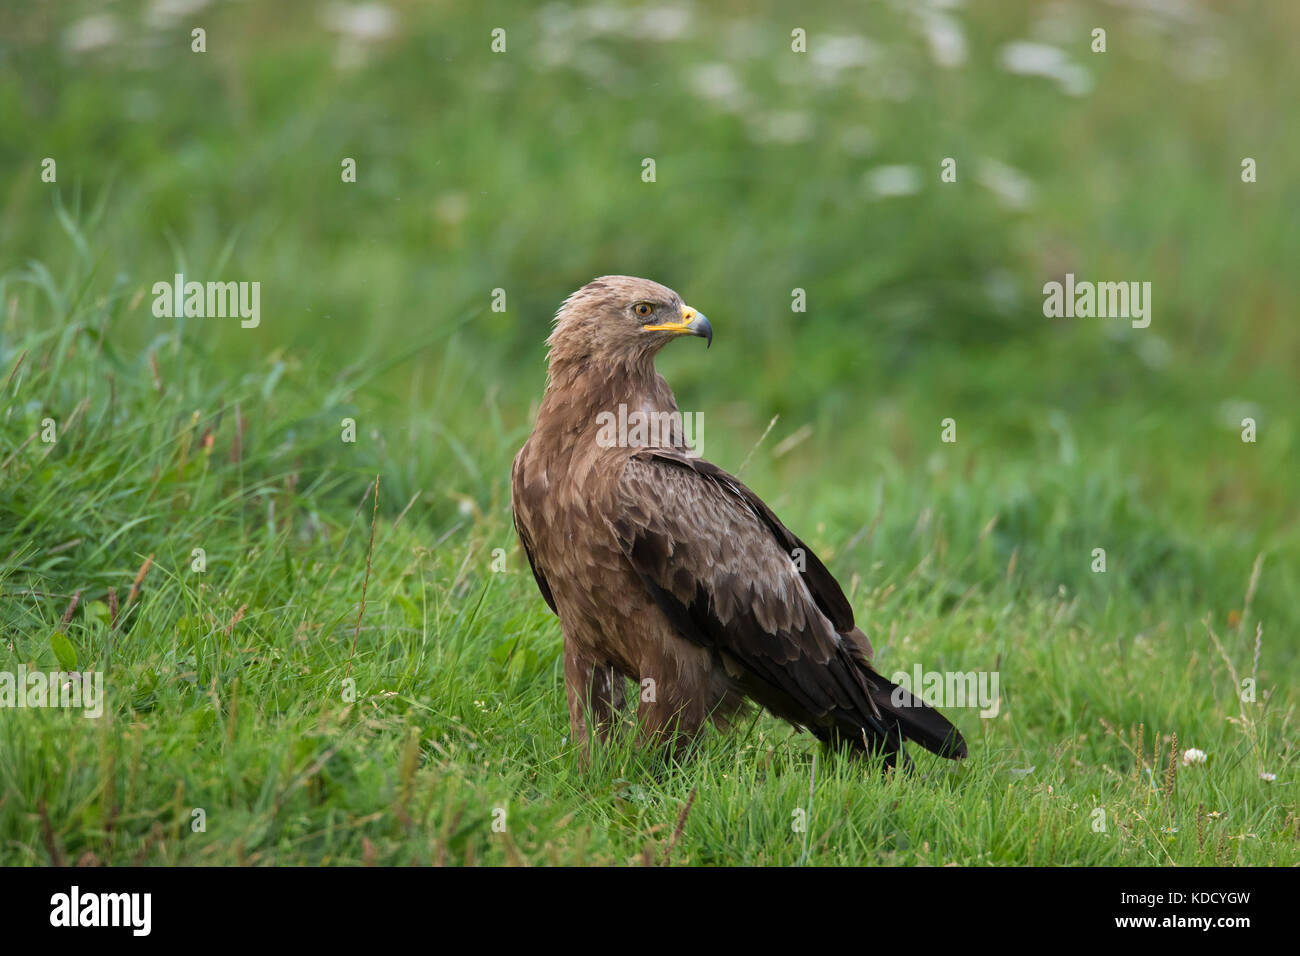 Menor (clanga águila manchado / Aquila pomarina pomarina) mirando hacia atrás en los prados, de aves rapaces migratorias nativa de Europa central y oriental Foto de stock